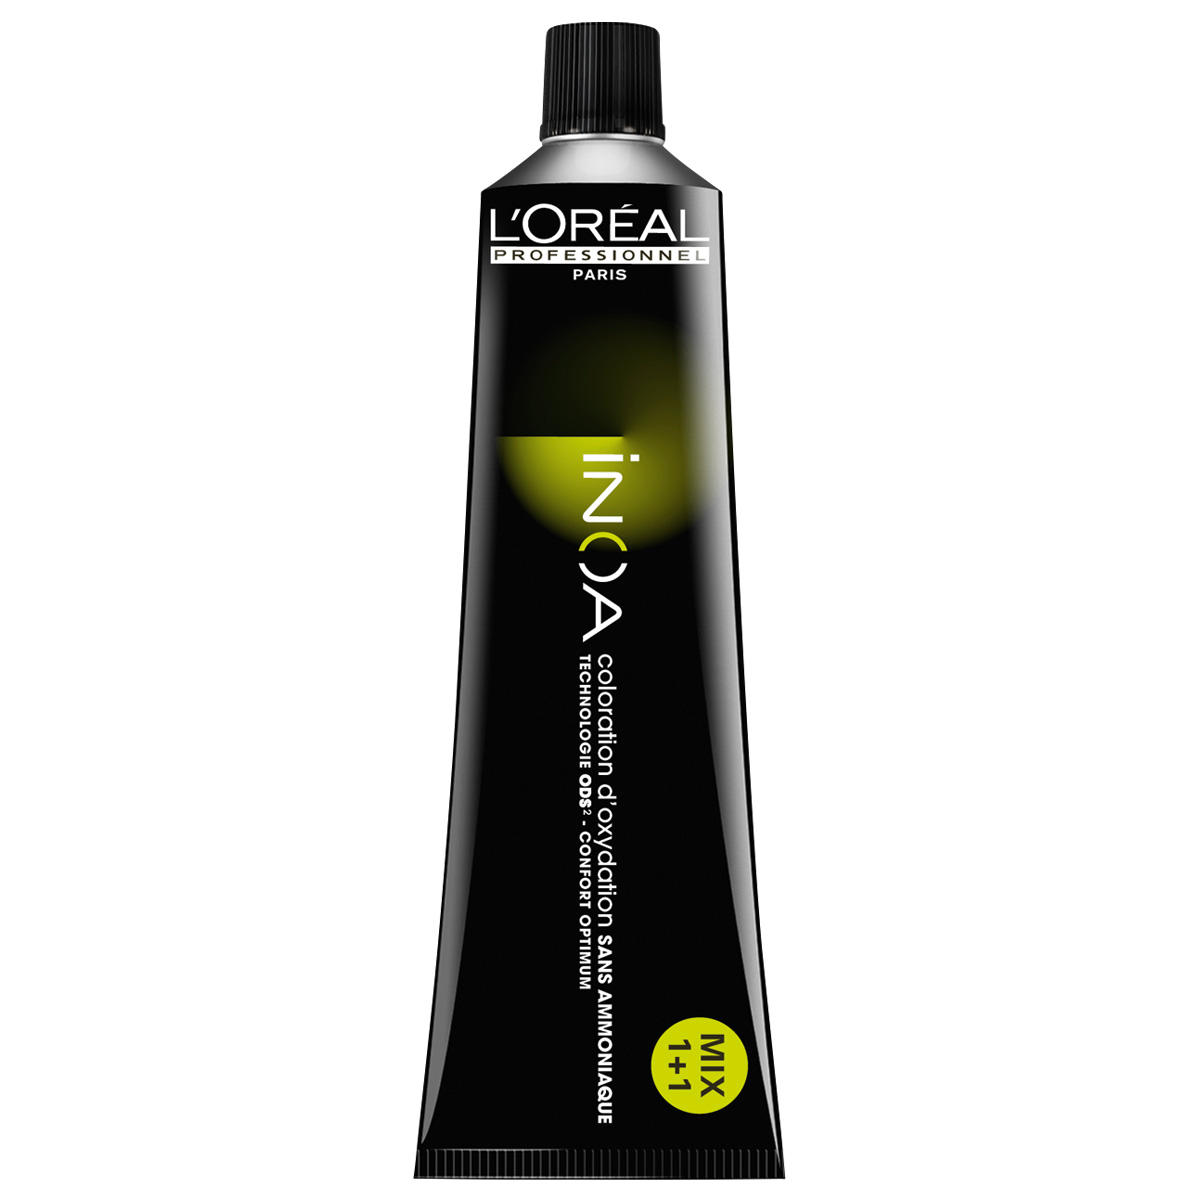 L'Oréal Professionnel Paris Coloration 5 Marrón claro, tubo 60 ml